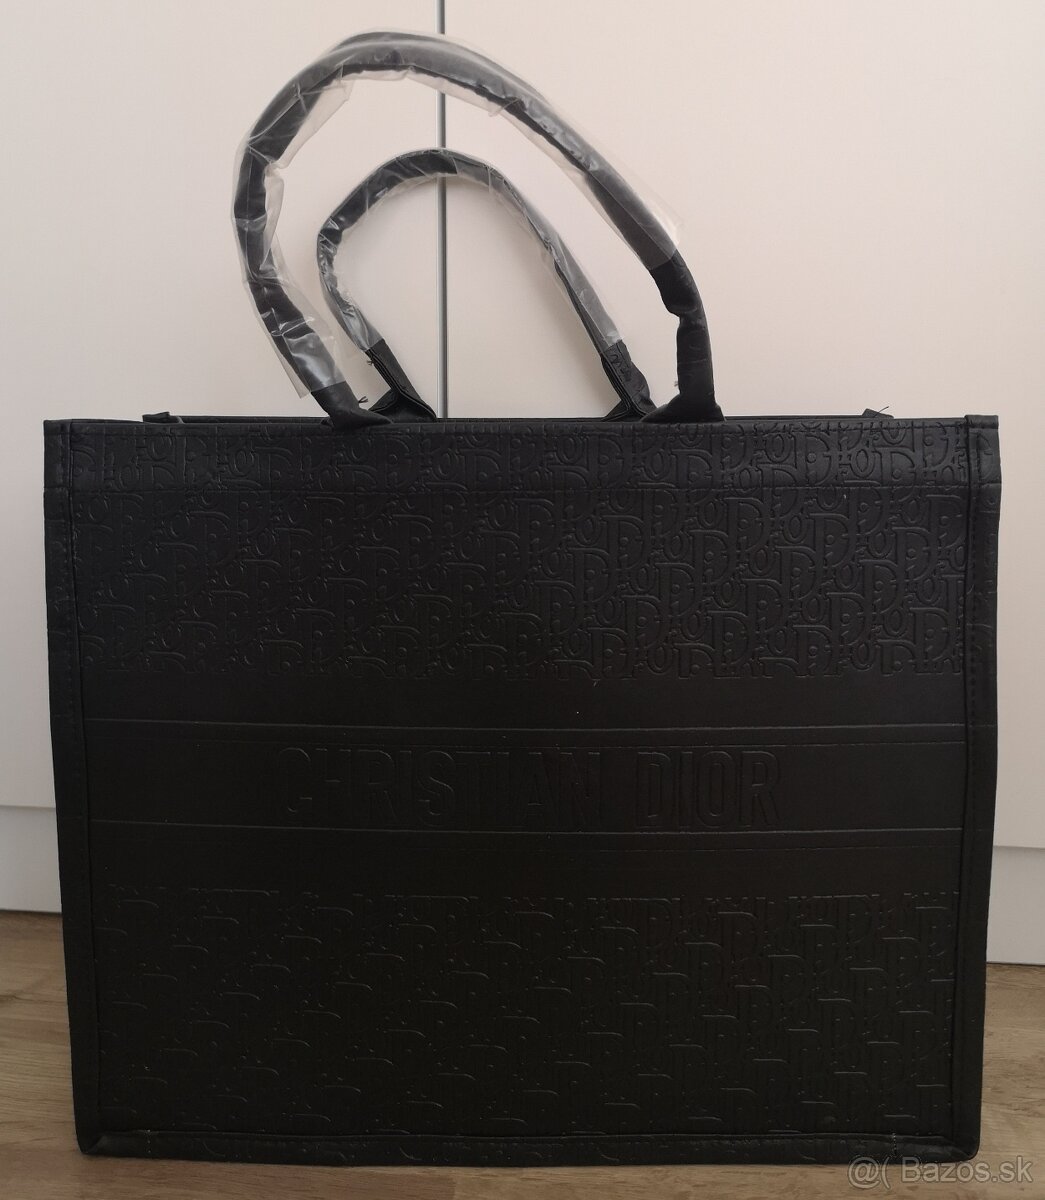 Dámska kabelka Christian Dior - čierna